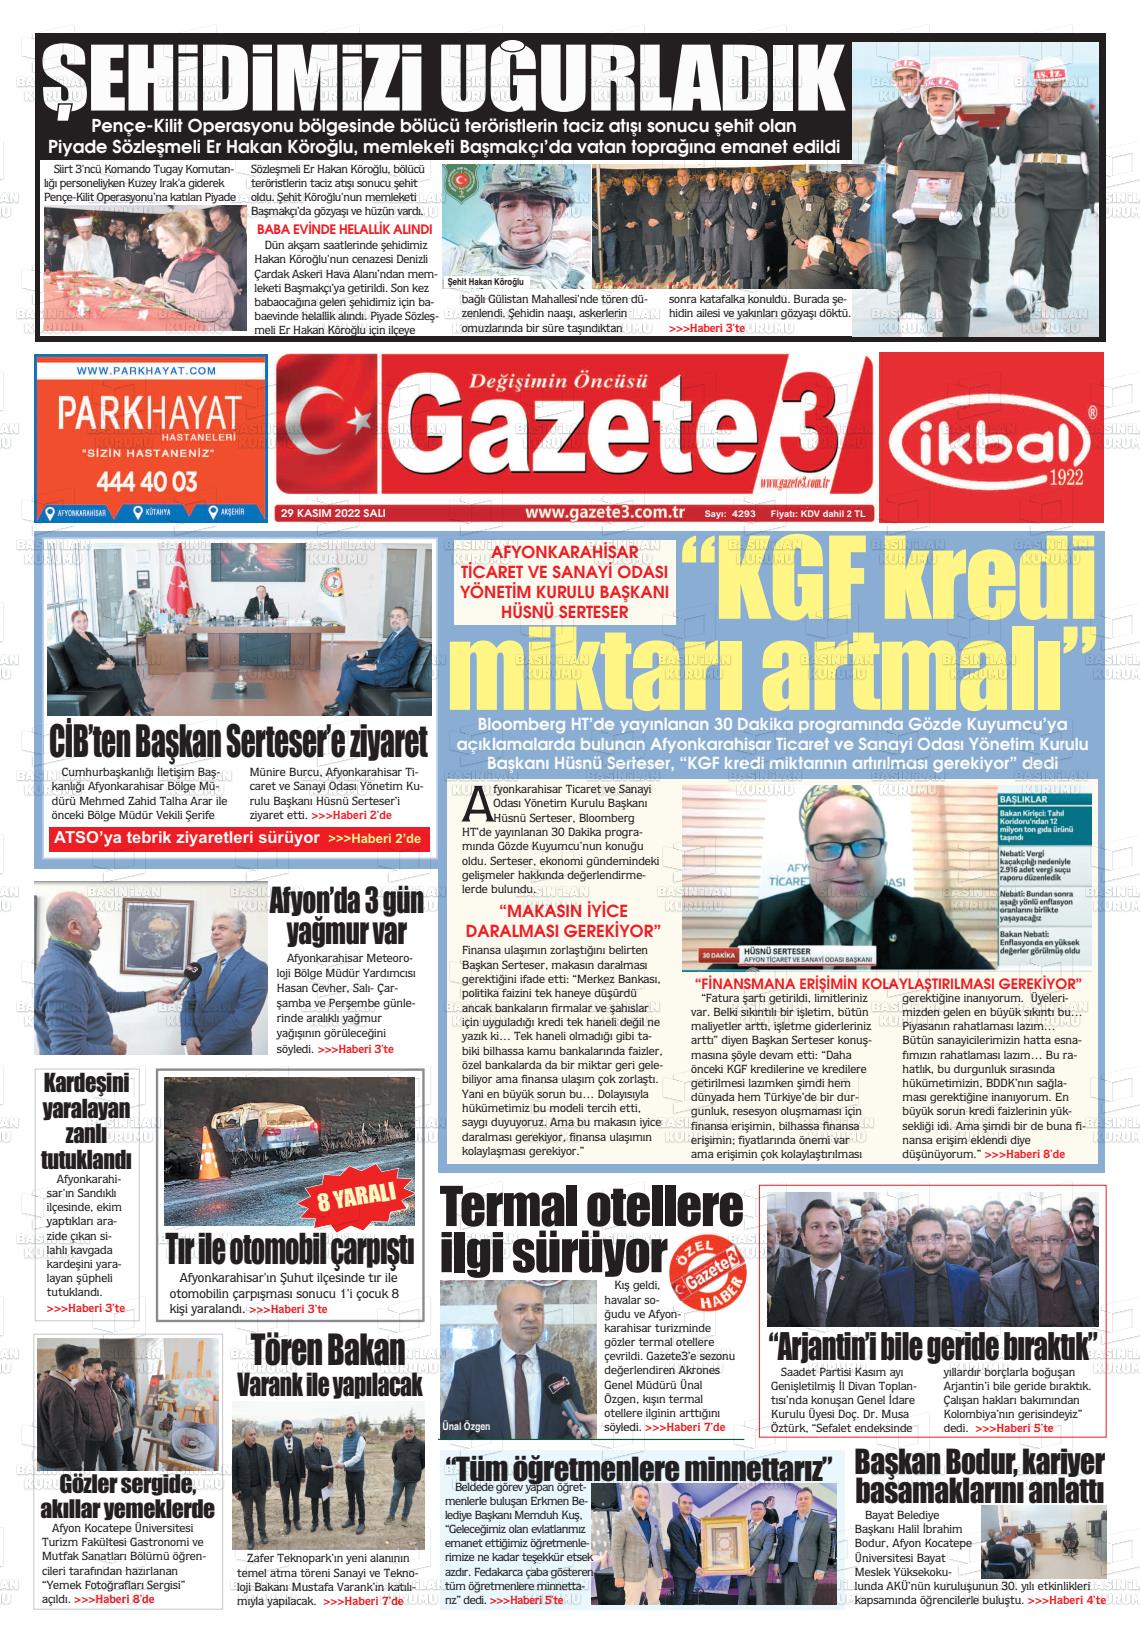 29 Kasım 2022 Gazete 3 Gazete Manşeti